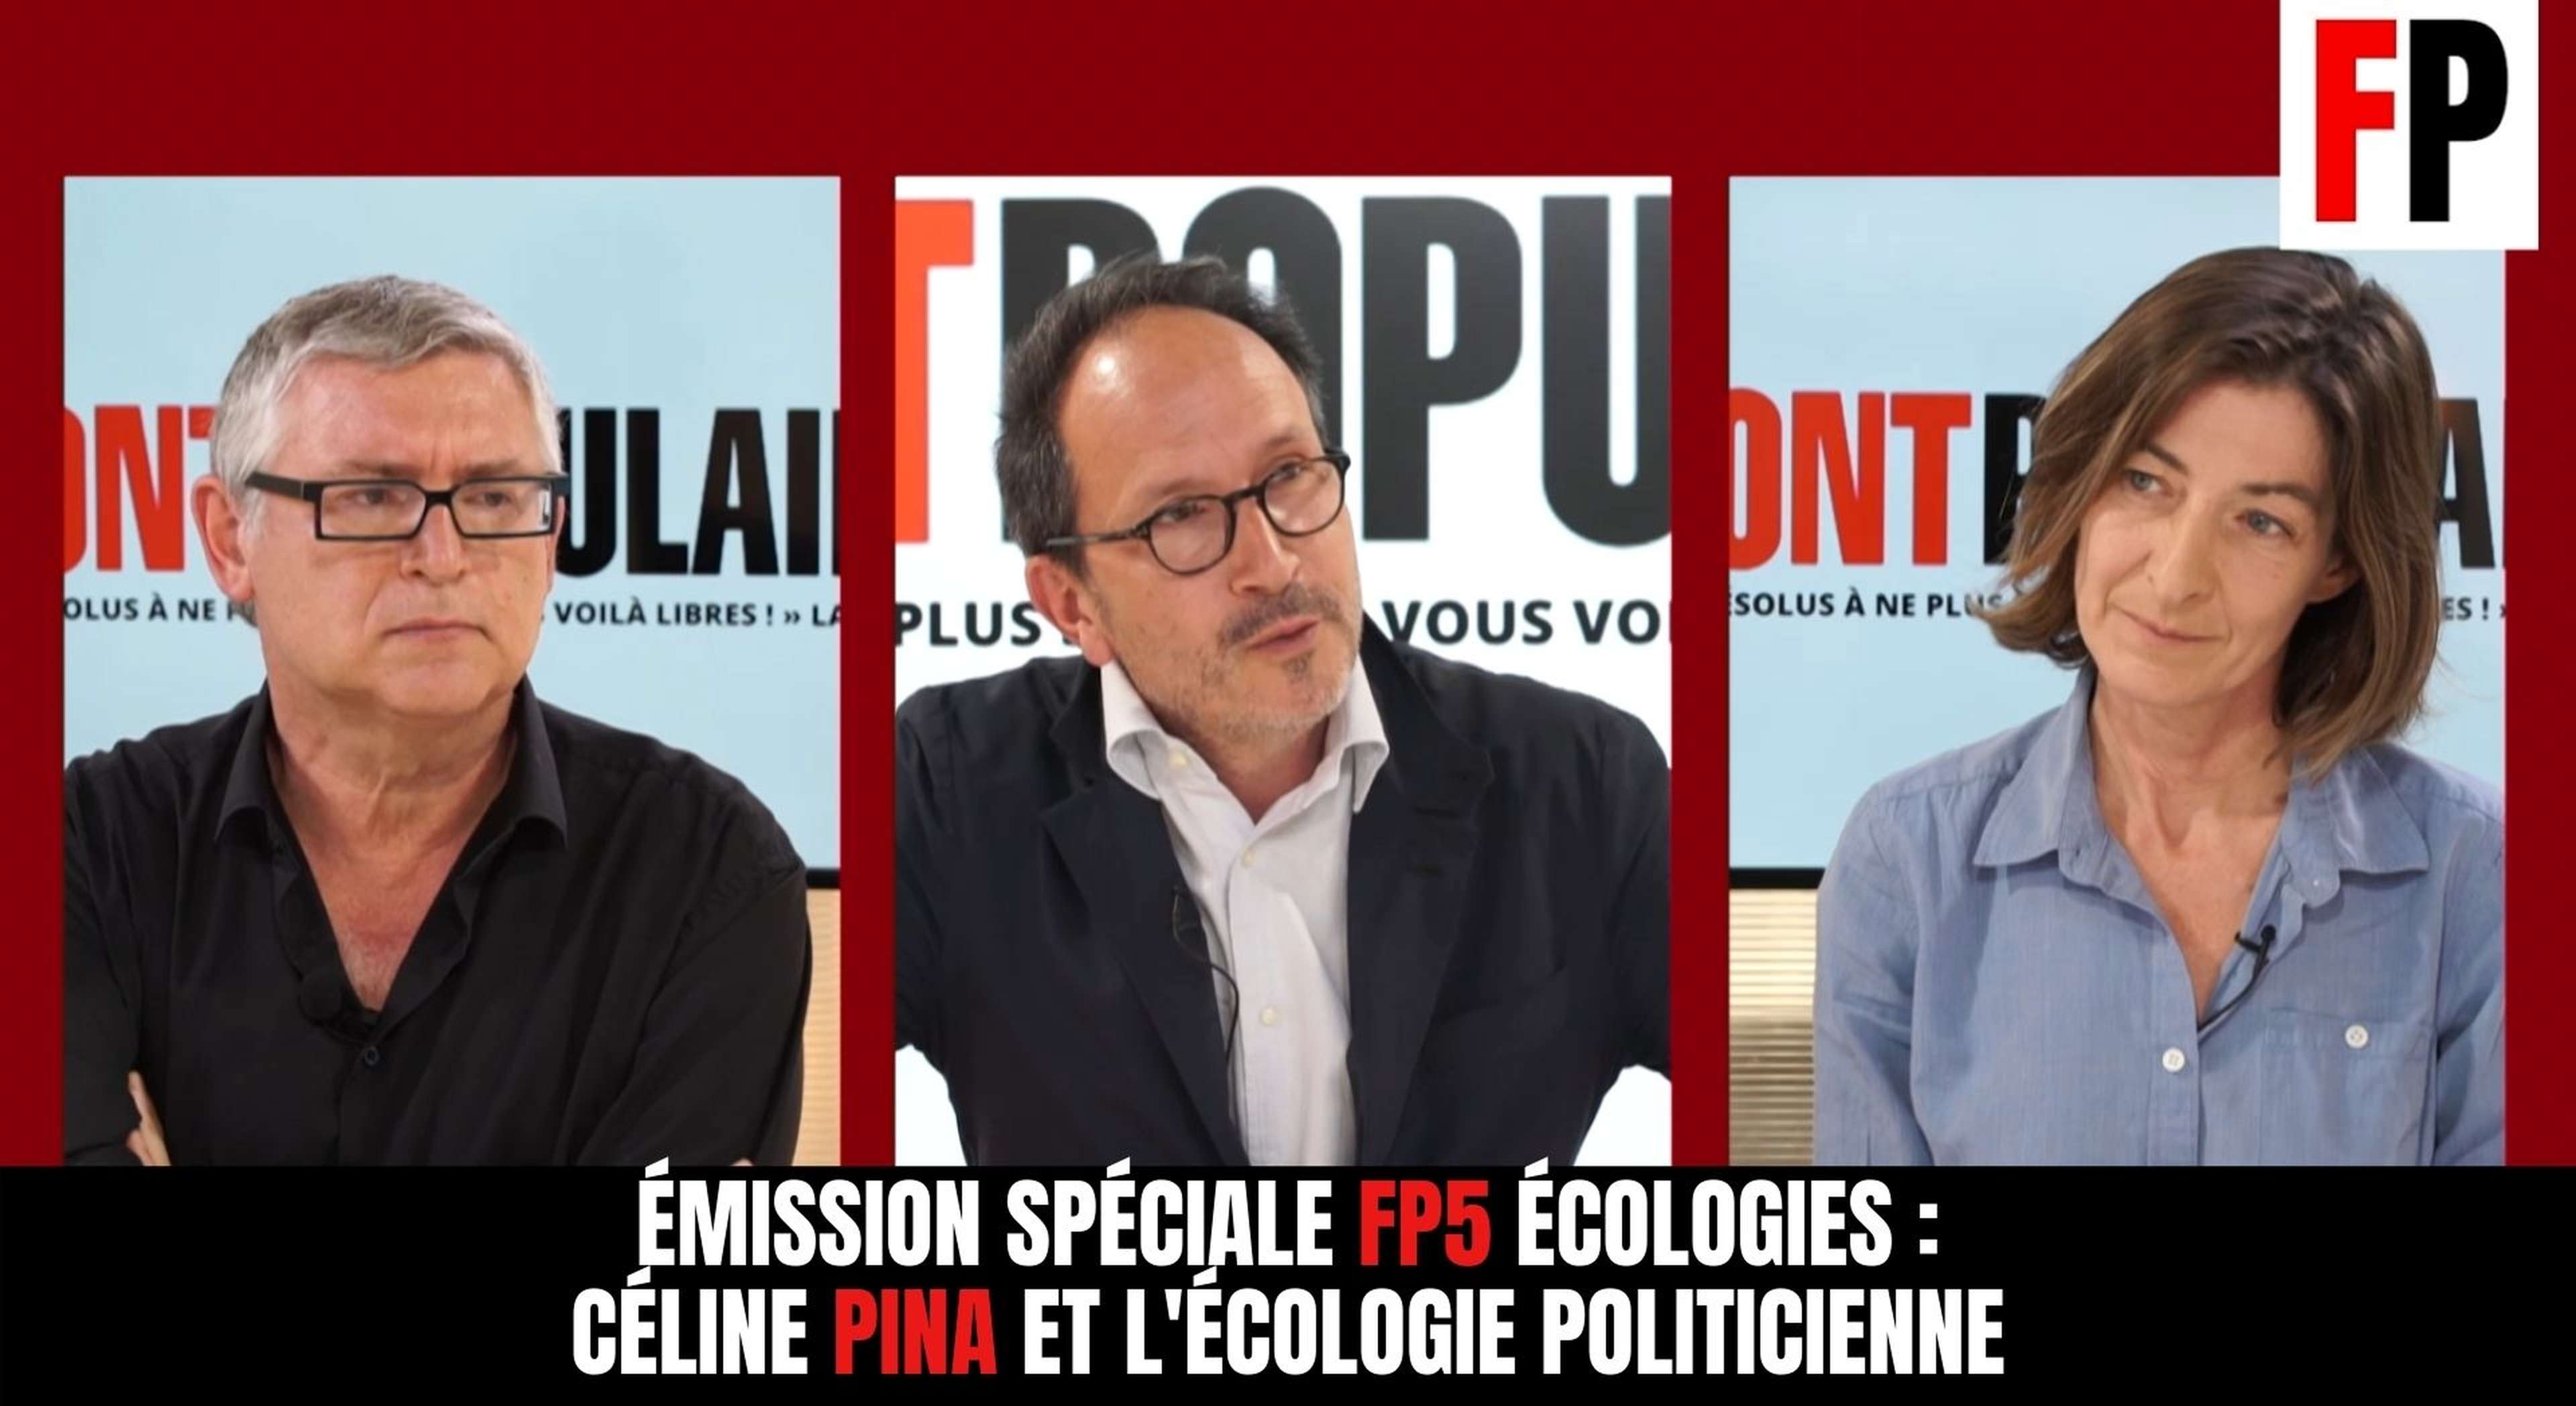 Emission spéciale FP5 Écologies : Céline Pina et l'écologie politicienne